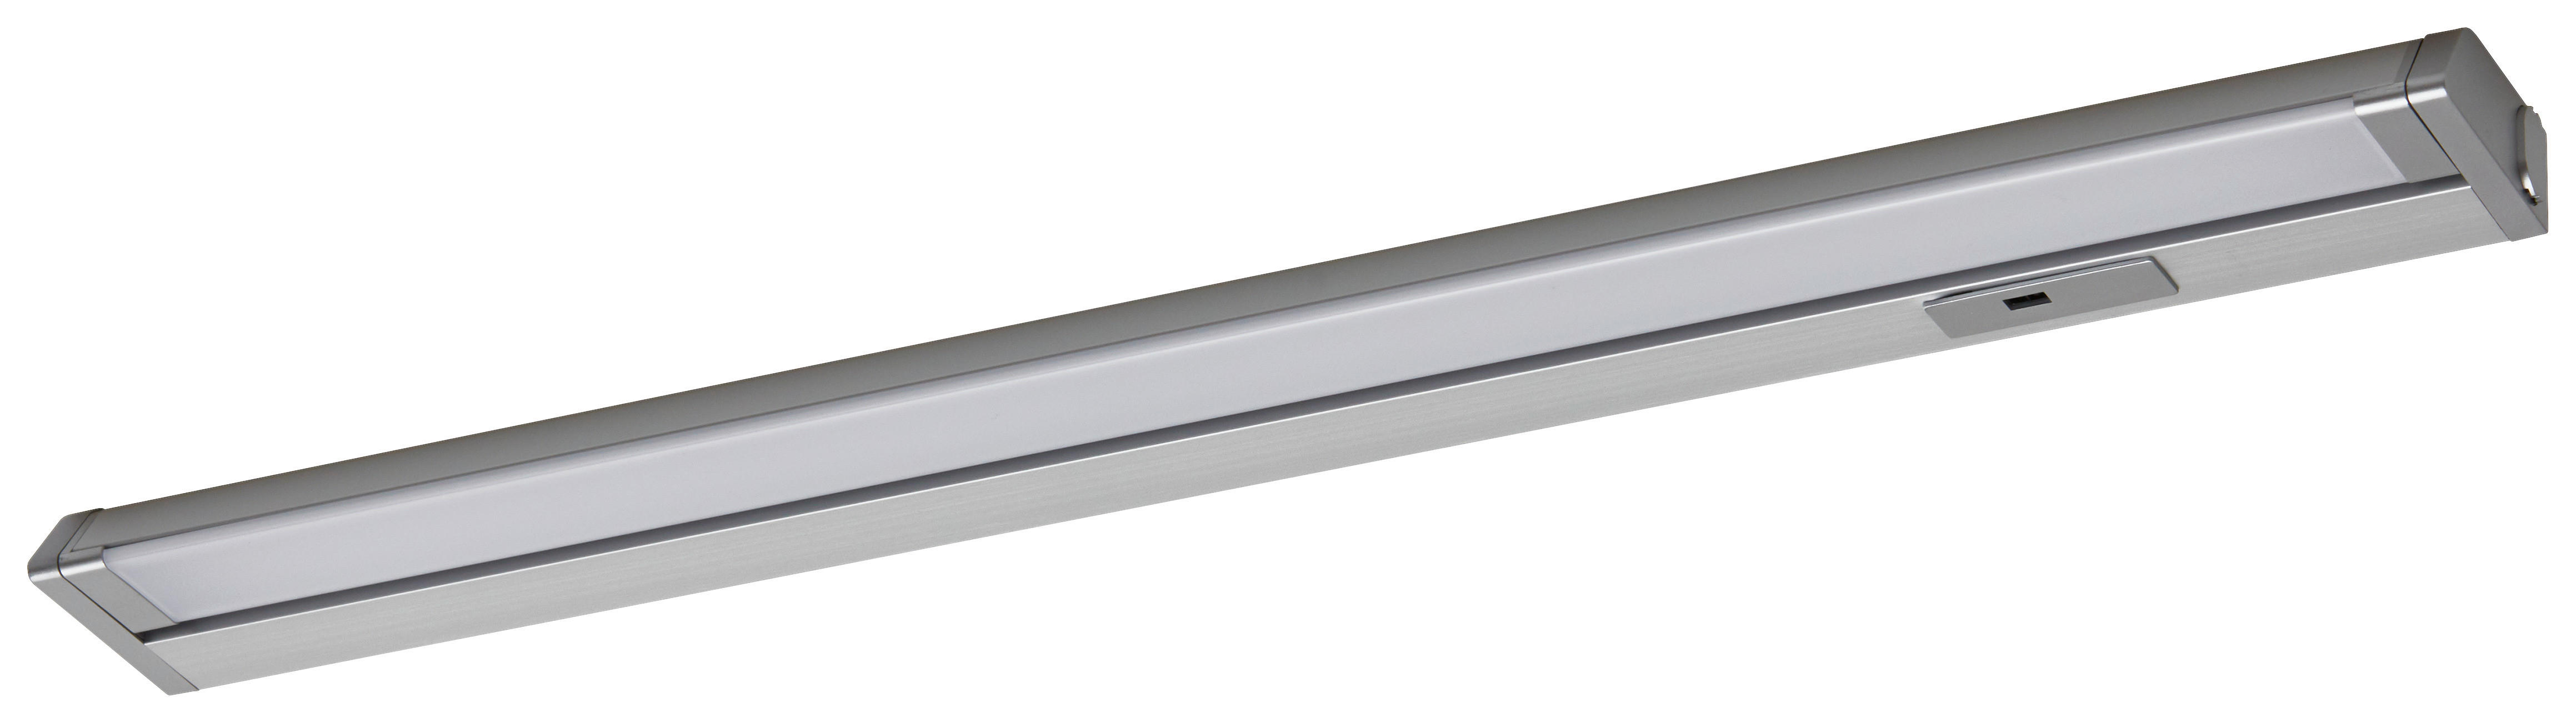 HÖLSCHER LED-Leuchten Cabinet Light Alu Metall B/H/T: ca. 56x2,5x6,1 cm Cabinet Light - weiß/Alu (56,00/2,50/6,10cm) - HÖLSCHER